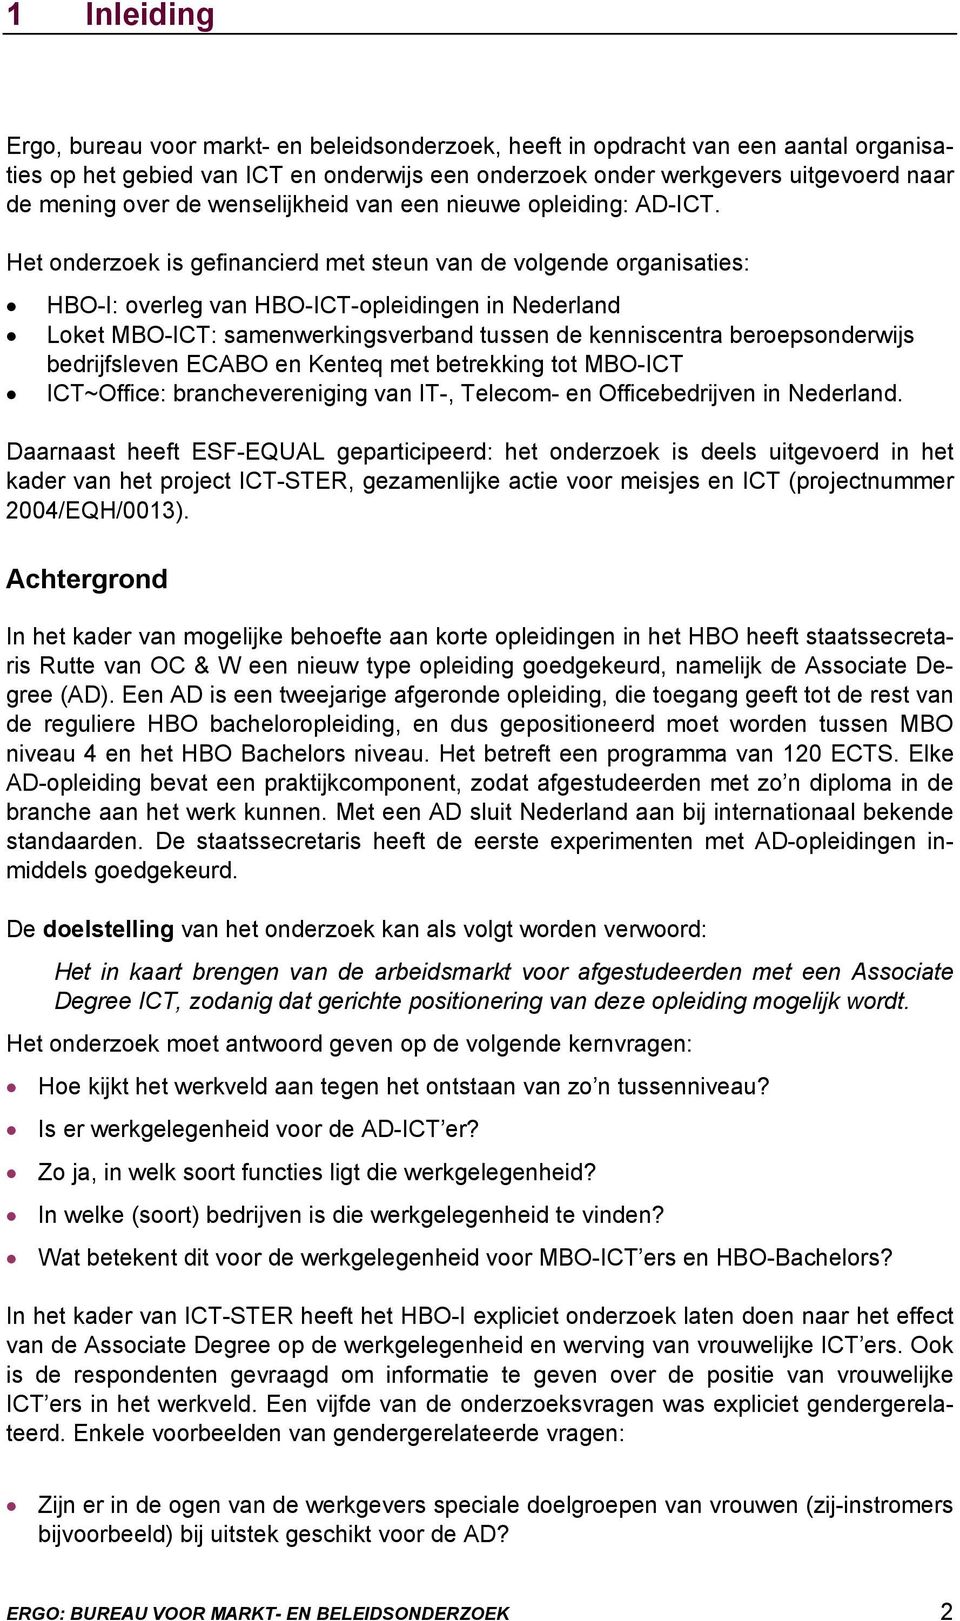 Het onderzoek is gefinancierd met steun van de volgende organisaties: HBO-I: overleg van HBO-ICT-opleidingen in Nederland Loket MBO-ICT: samenwerkingsverband tussen de kenniscentra beroepsonderwijs